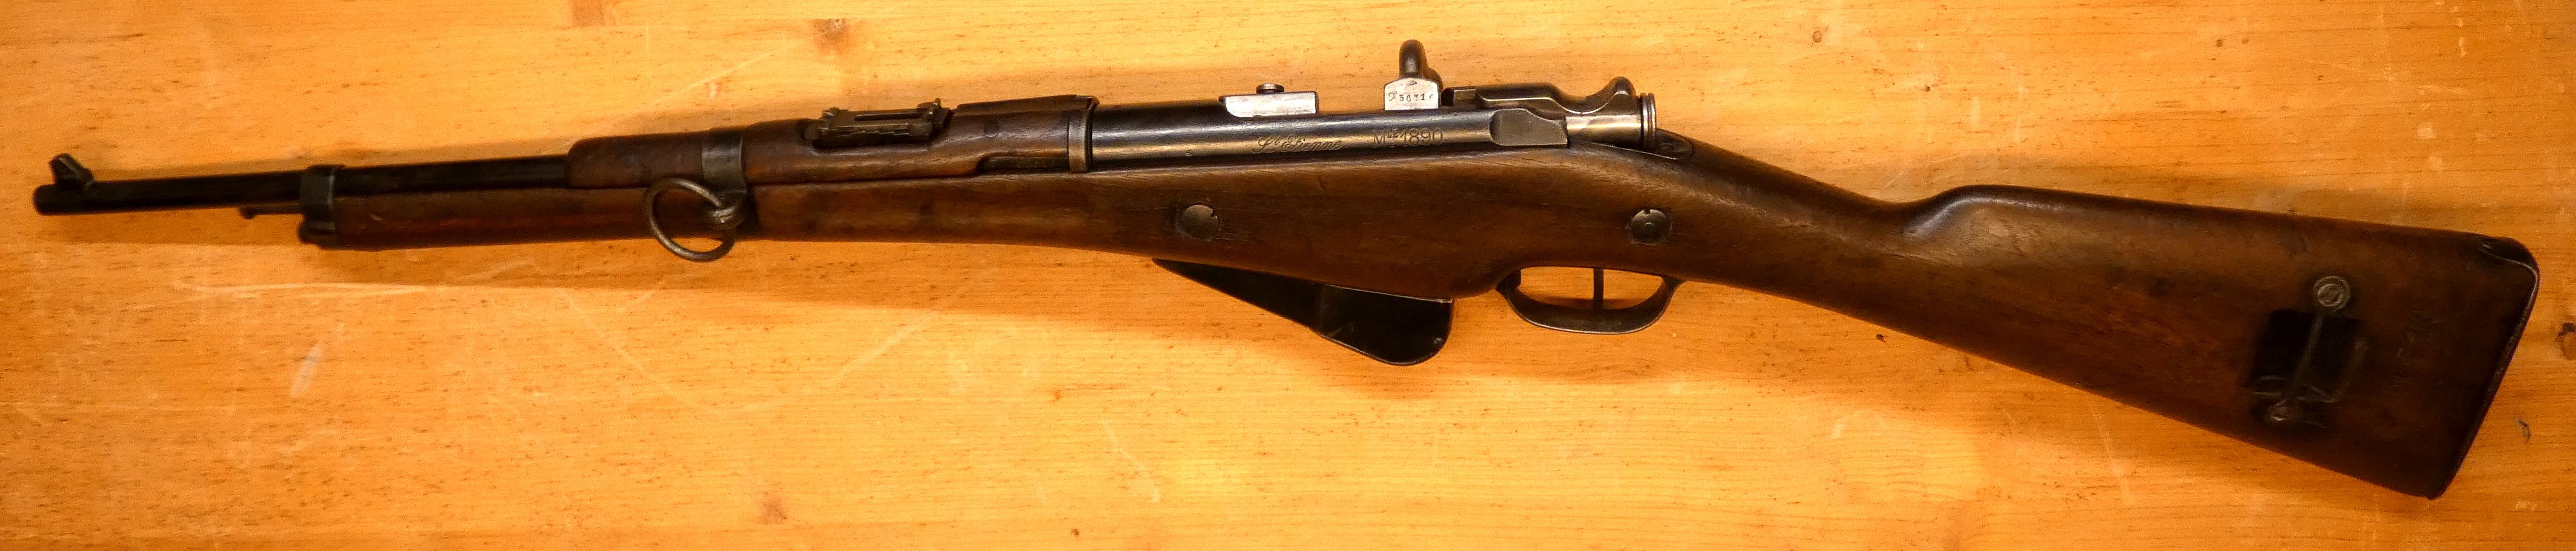 présentation d'une carabine Mle 1890 transformée 1916 23